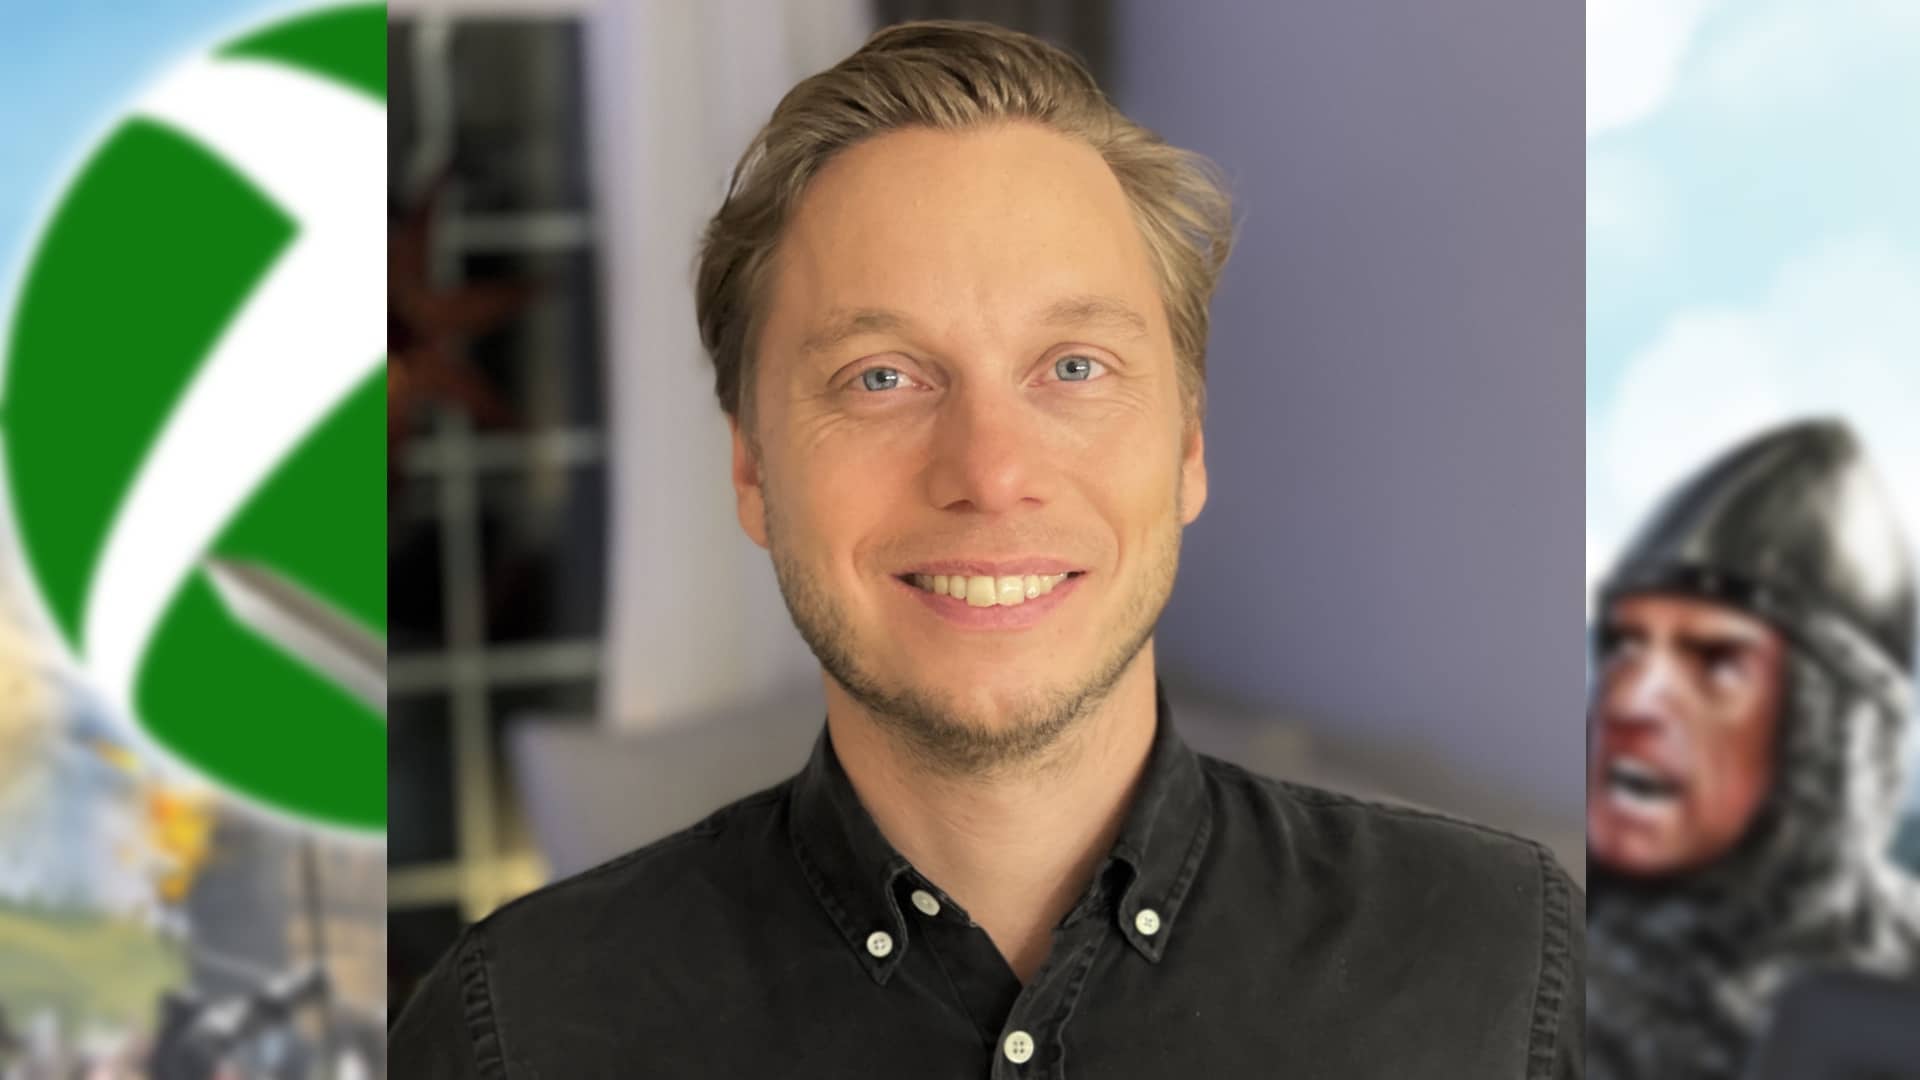 Johan Bolin es Director de Marketing de Paradox Interactive.